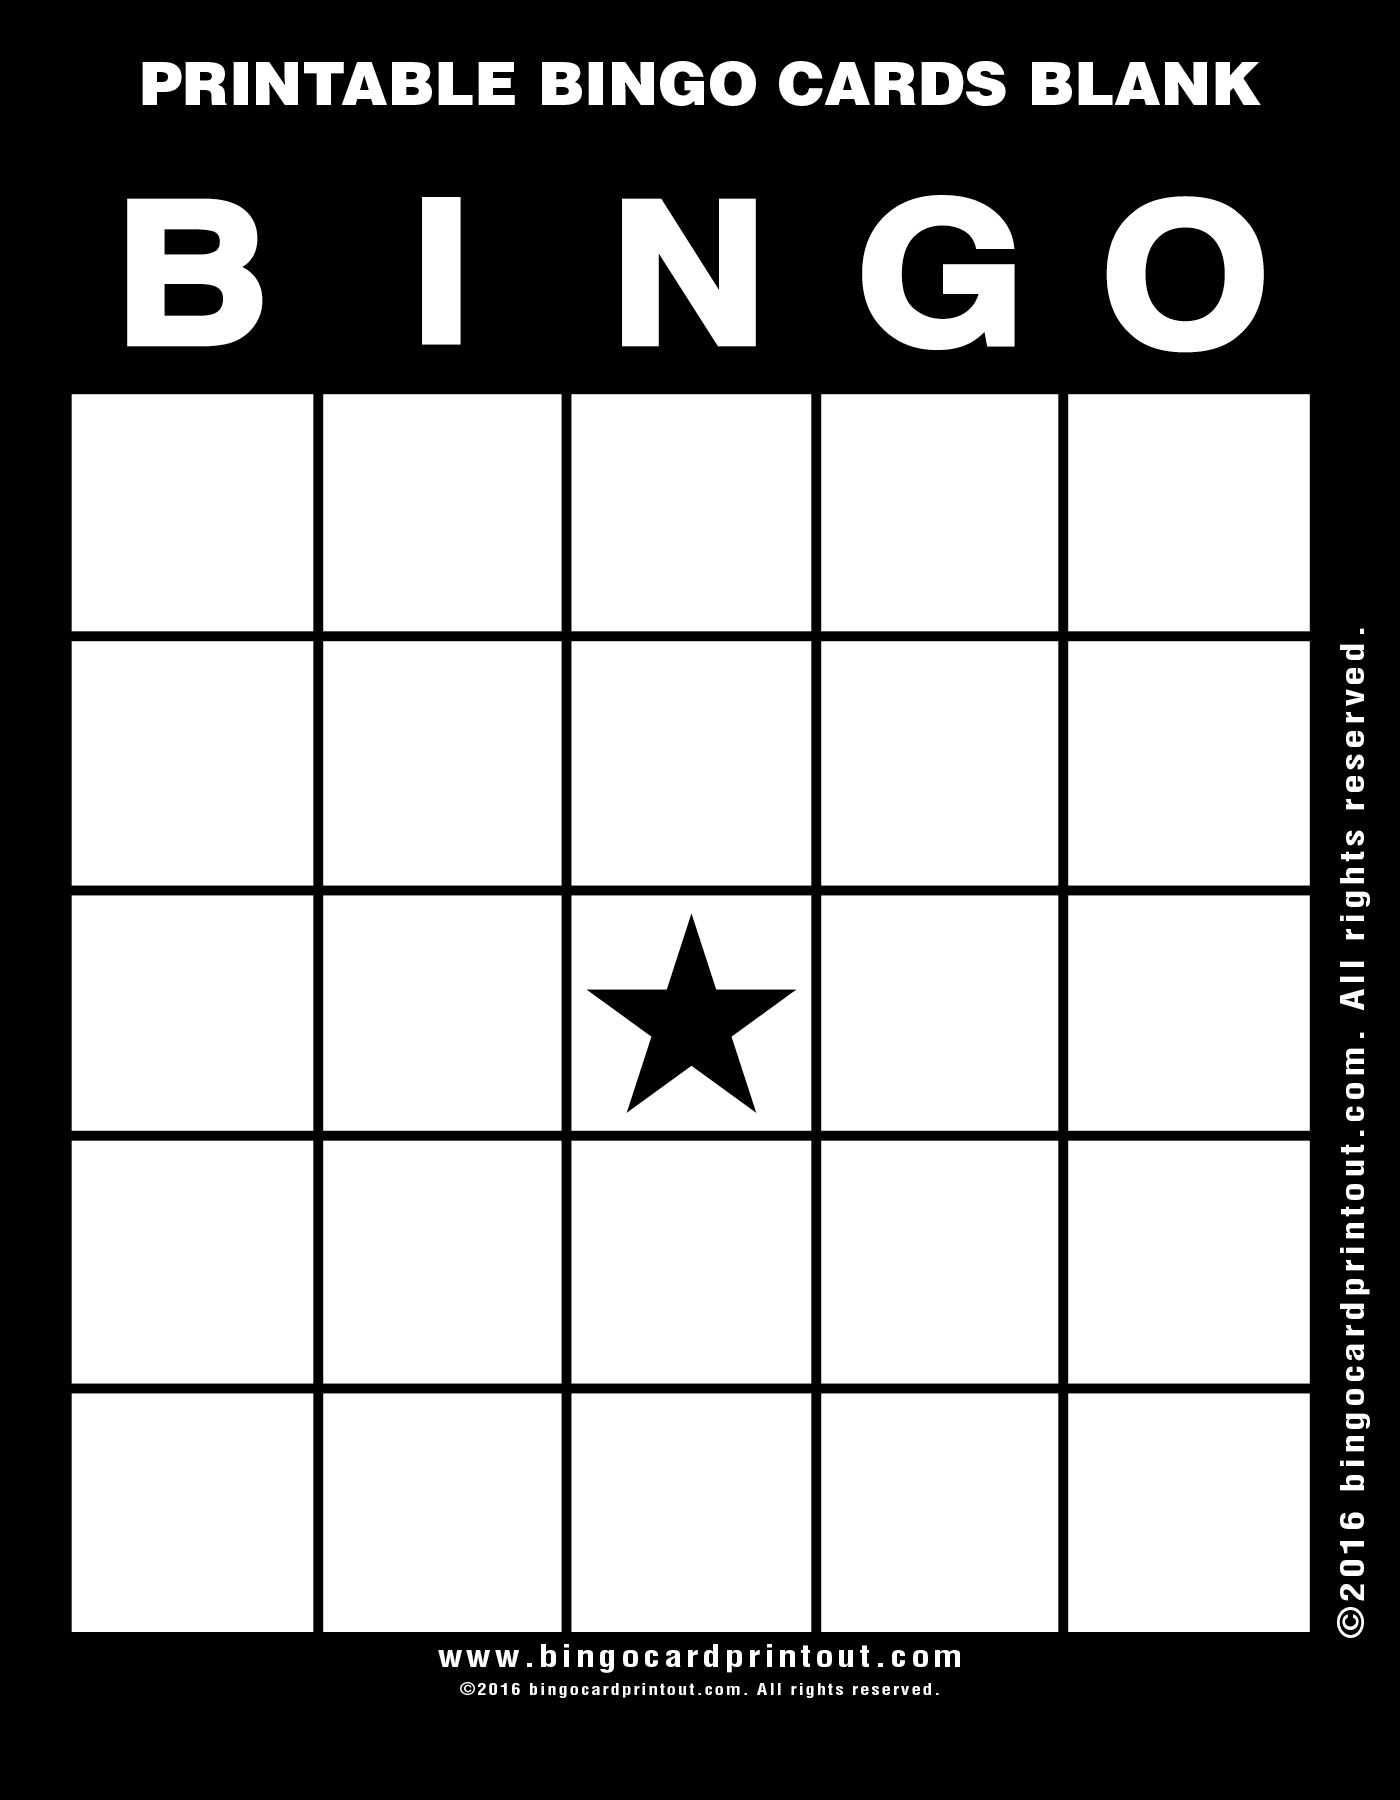 Printable Bingo Cards Blank BingoCardPrintout